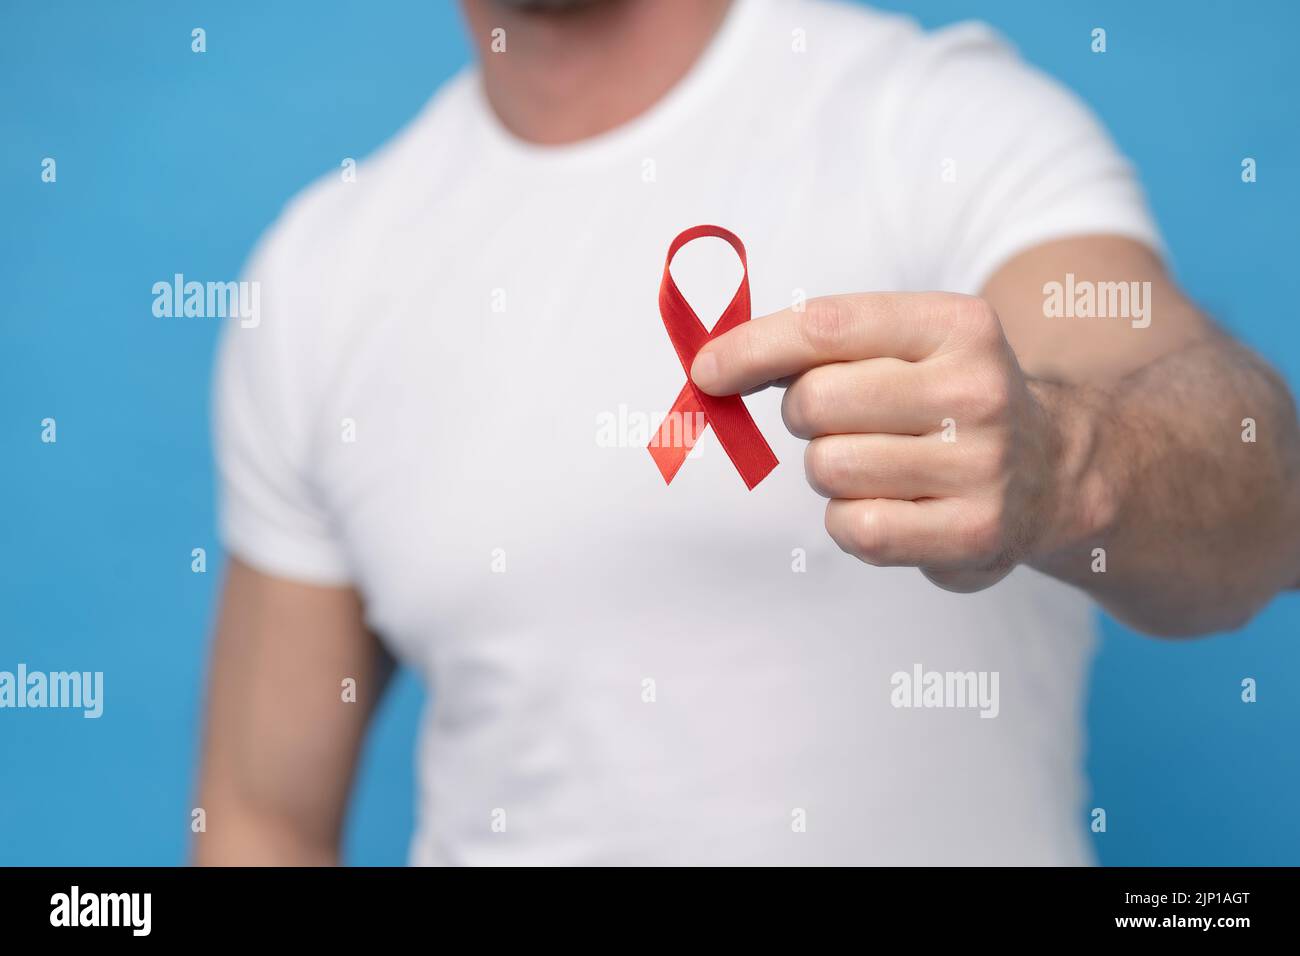 Uomo con fiocco rosso simbolo di consapevolezza di AIDS in mano che indossa una t-shirt bianca isolata su uno sfondo blu. Medicina moderna e sanità. AIDS concetto di consapevolezza. Nessuna faccia visibile. Foto Stock